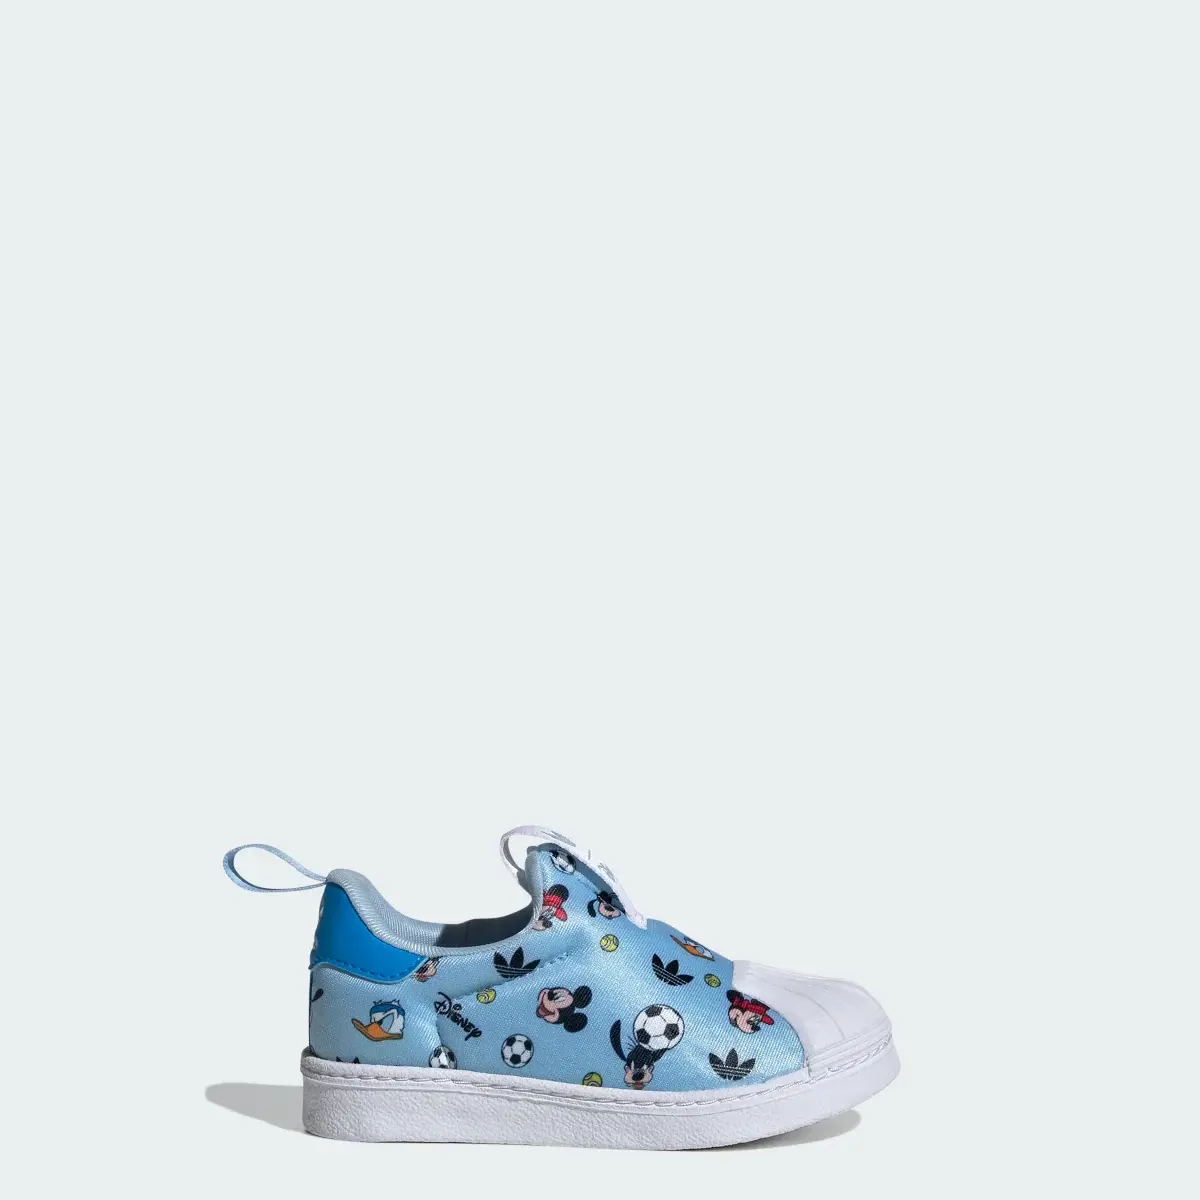 Adidas Originals x Disney Mickey Superstar 360 Shoes Kids. 1